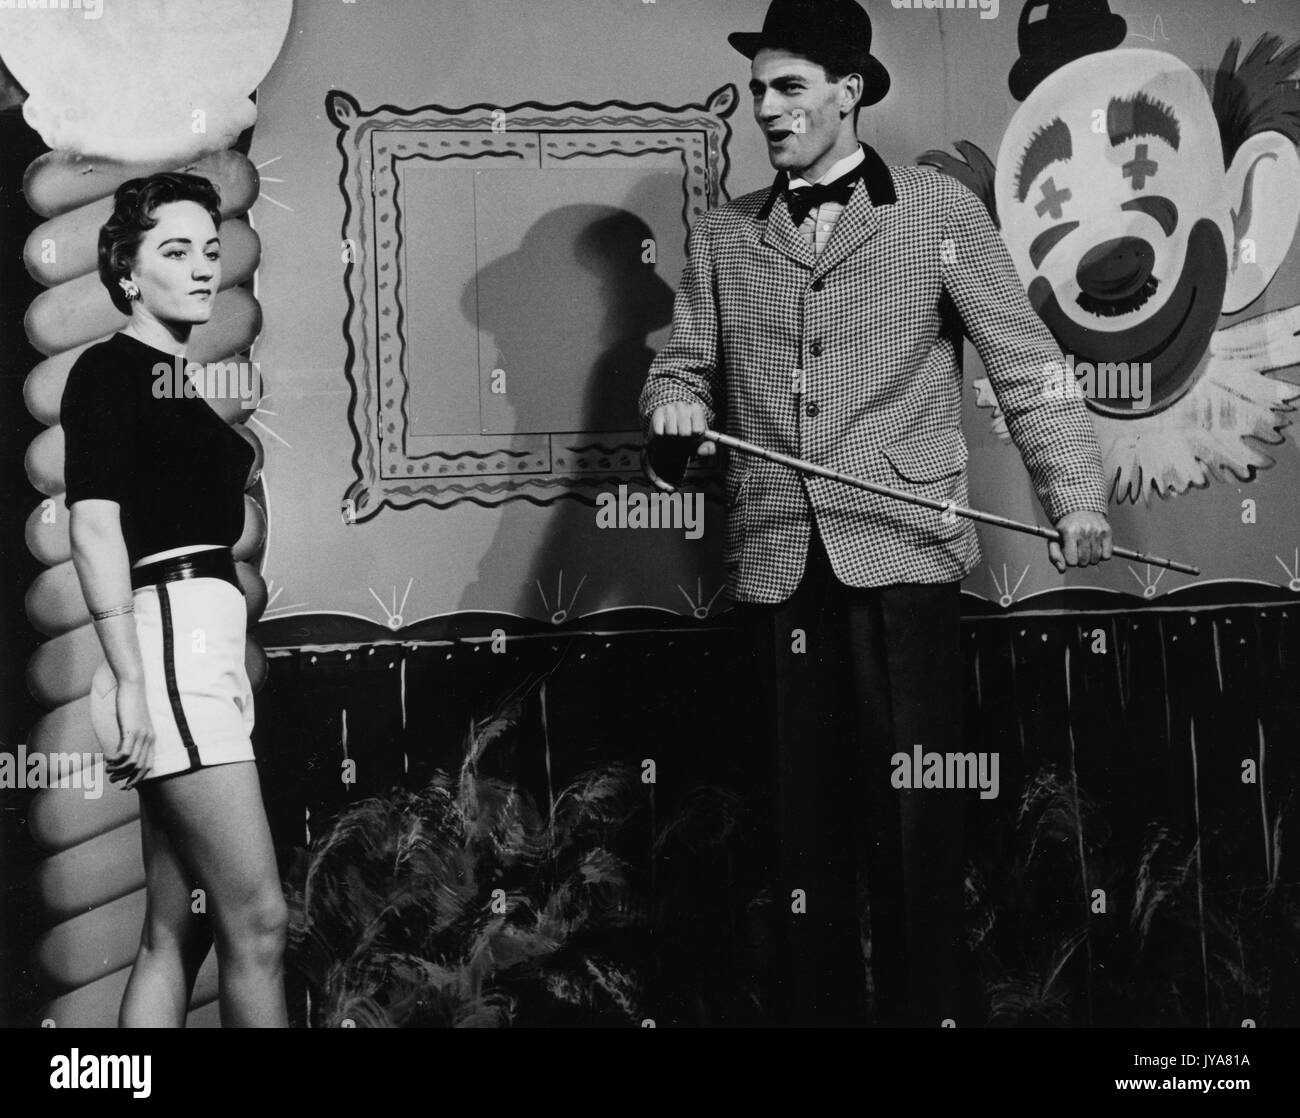 Zwei Schauspieler sind Dreharbeiten für die Johns Hopkins Science Review, Schauspieler Lynn Rosenthal ist auf der linken Seite und trägt Licht farbige Shorts und ein schwarzes T-Shirt, Schauspieler Edmond Abgabe wird auf der rechten Seite und er trägt einen karierten Anzug Jacke mit dunklen Hosen, hält er ein dünnes Rohr, hinter den beiden Akteuren ist der Clown Gesicht an der Wand, 1955 gemalt. Stockfoto